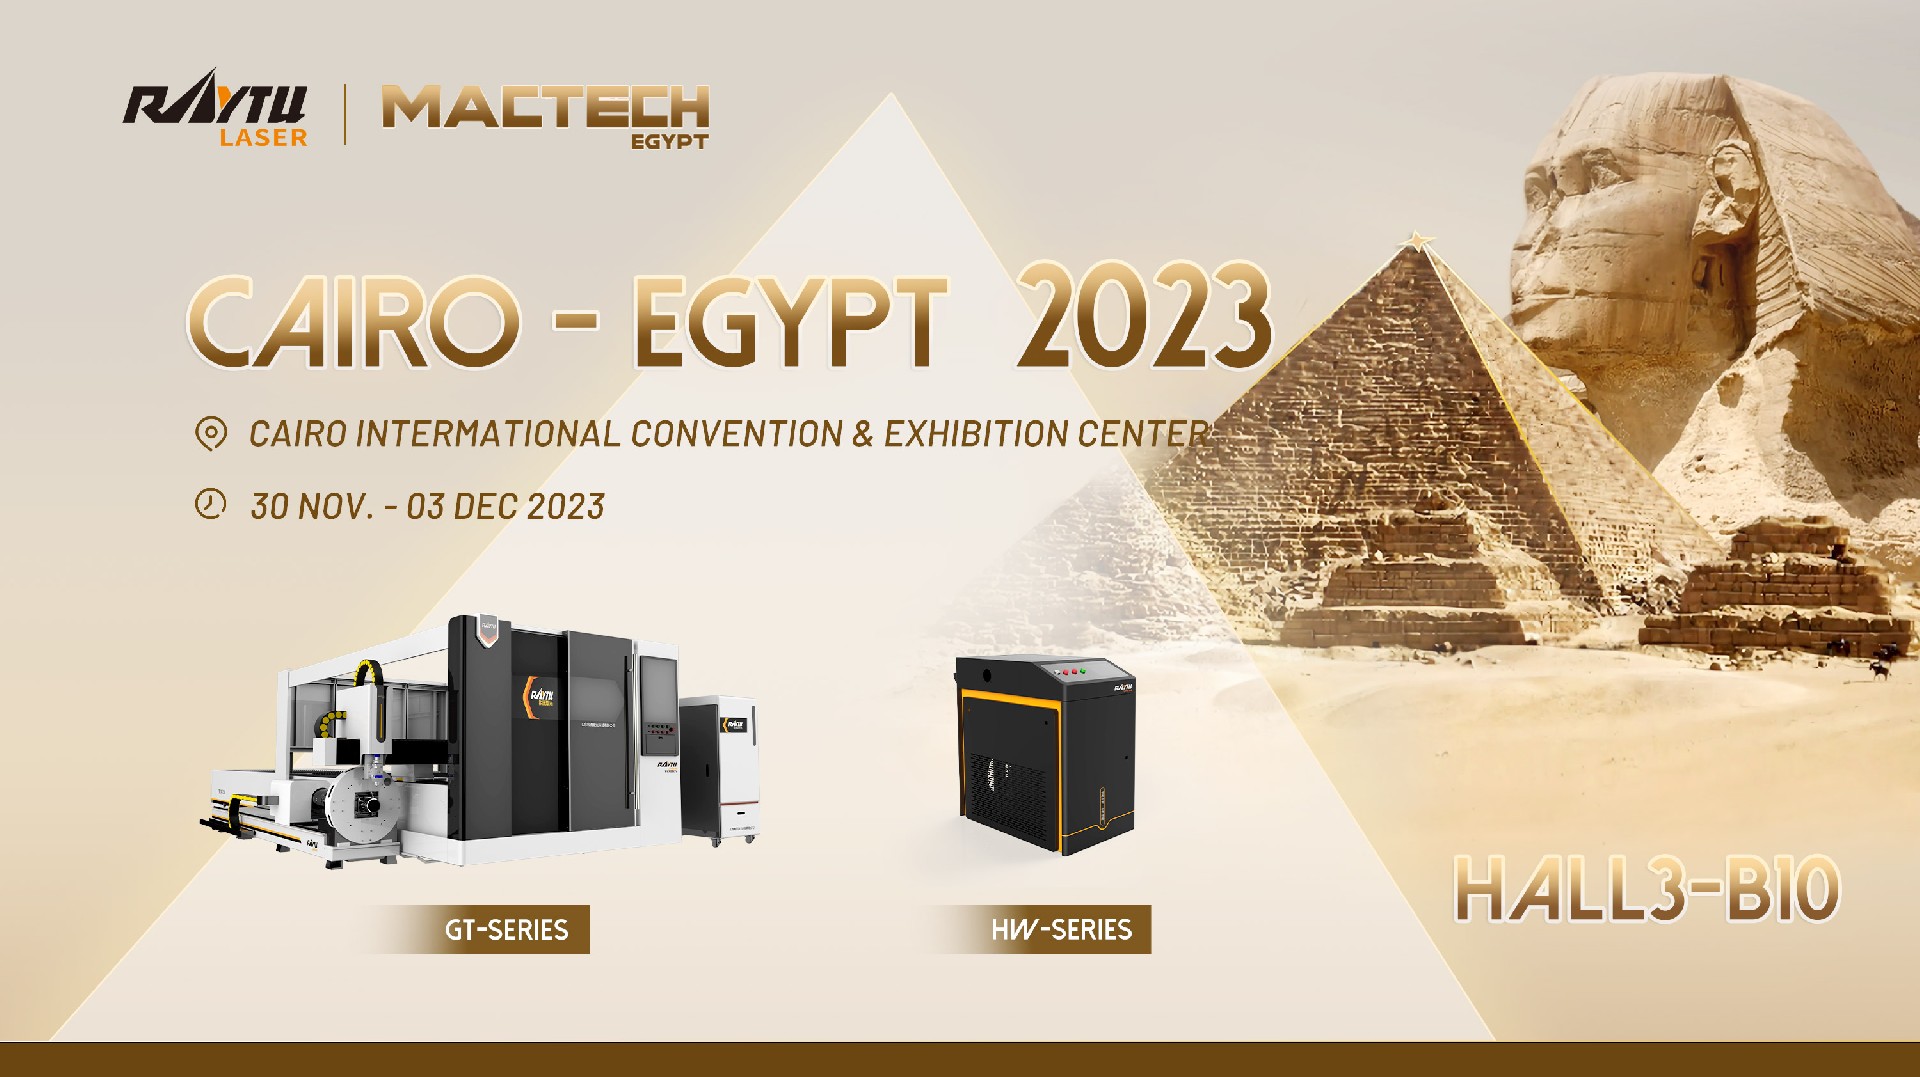 تدعوكم شركة Raytu Laser لزيارتنا في معرض Mactech القاهرة-مصر 2023 في الفترة من 30 نوفمبر إلى 3 ديسمب